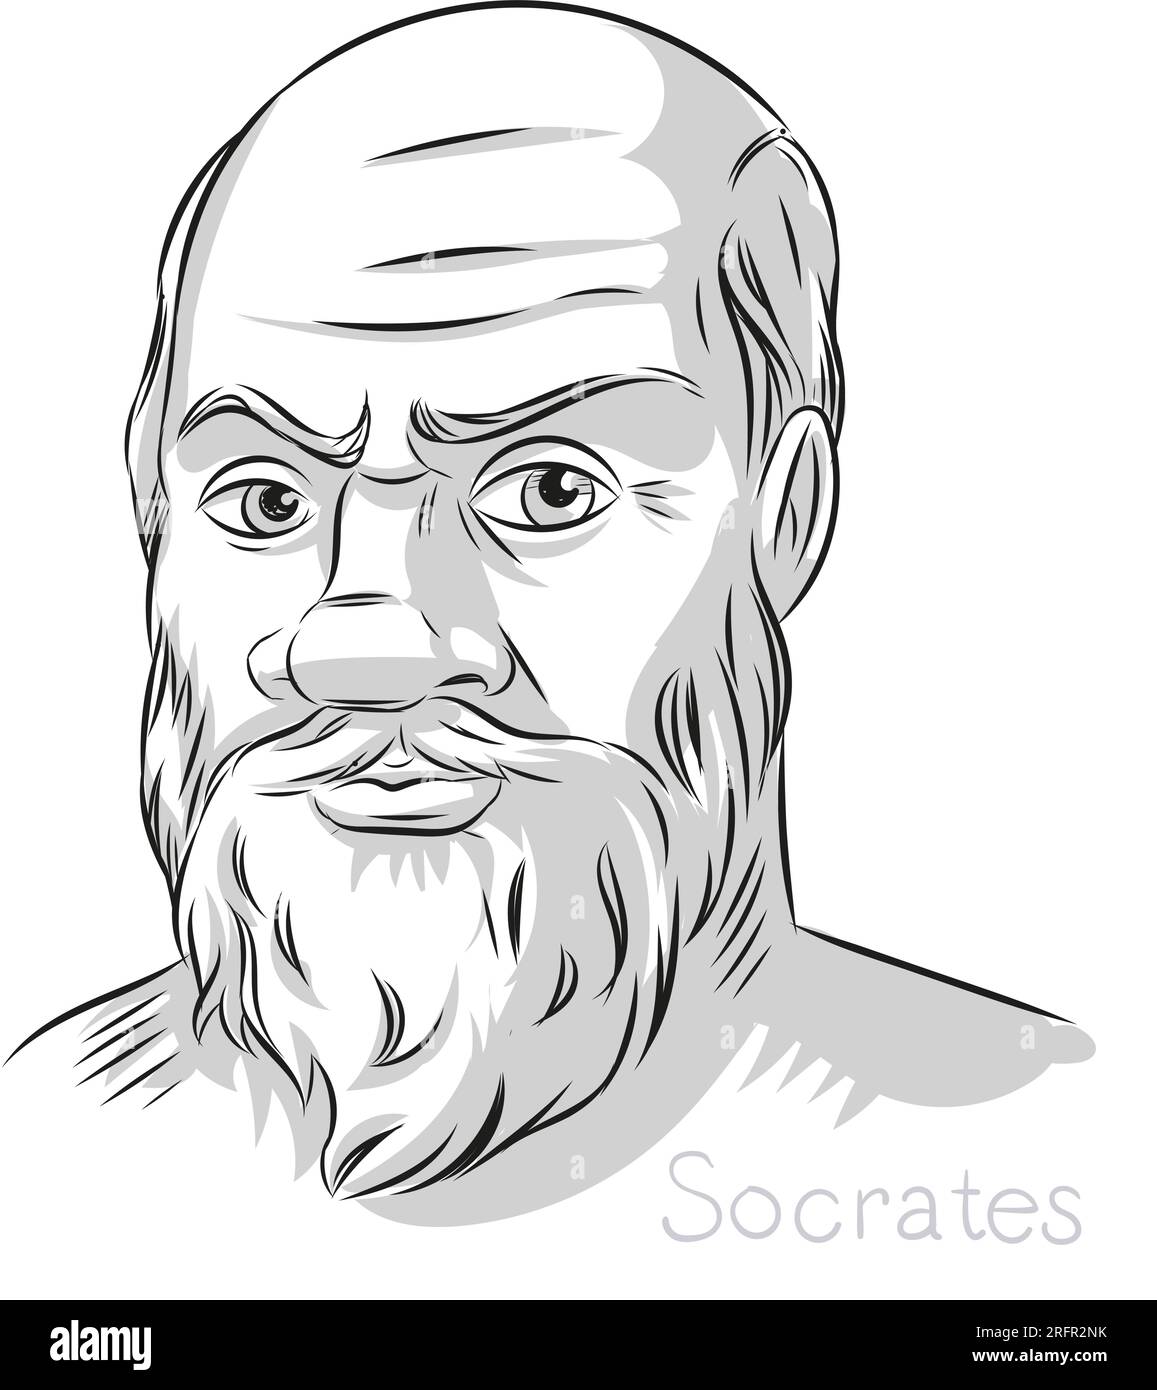 Sokrates griechischer Philosoph, handgezeichnete Linie, Kunst Porträt Illustration Stock Vektor